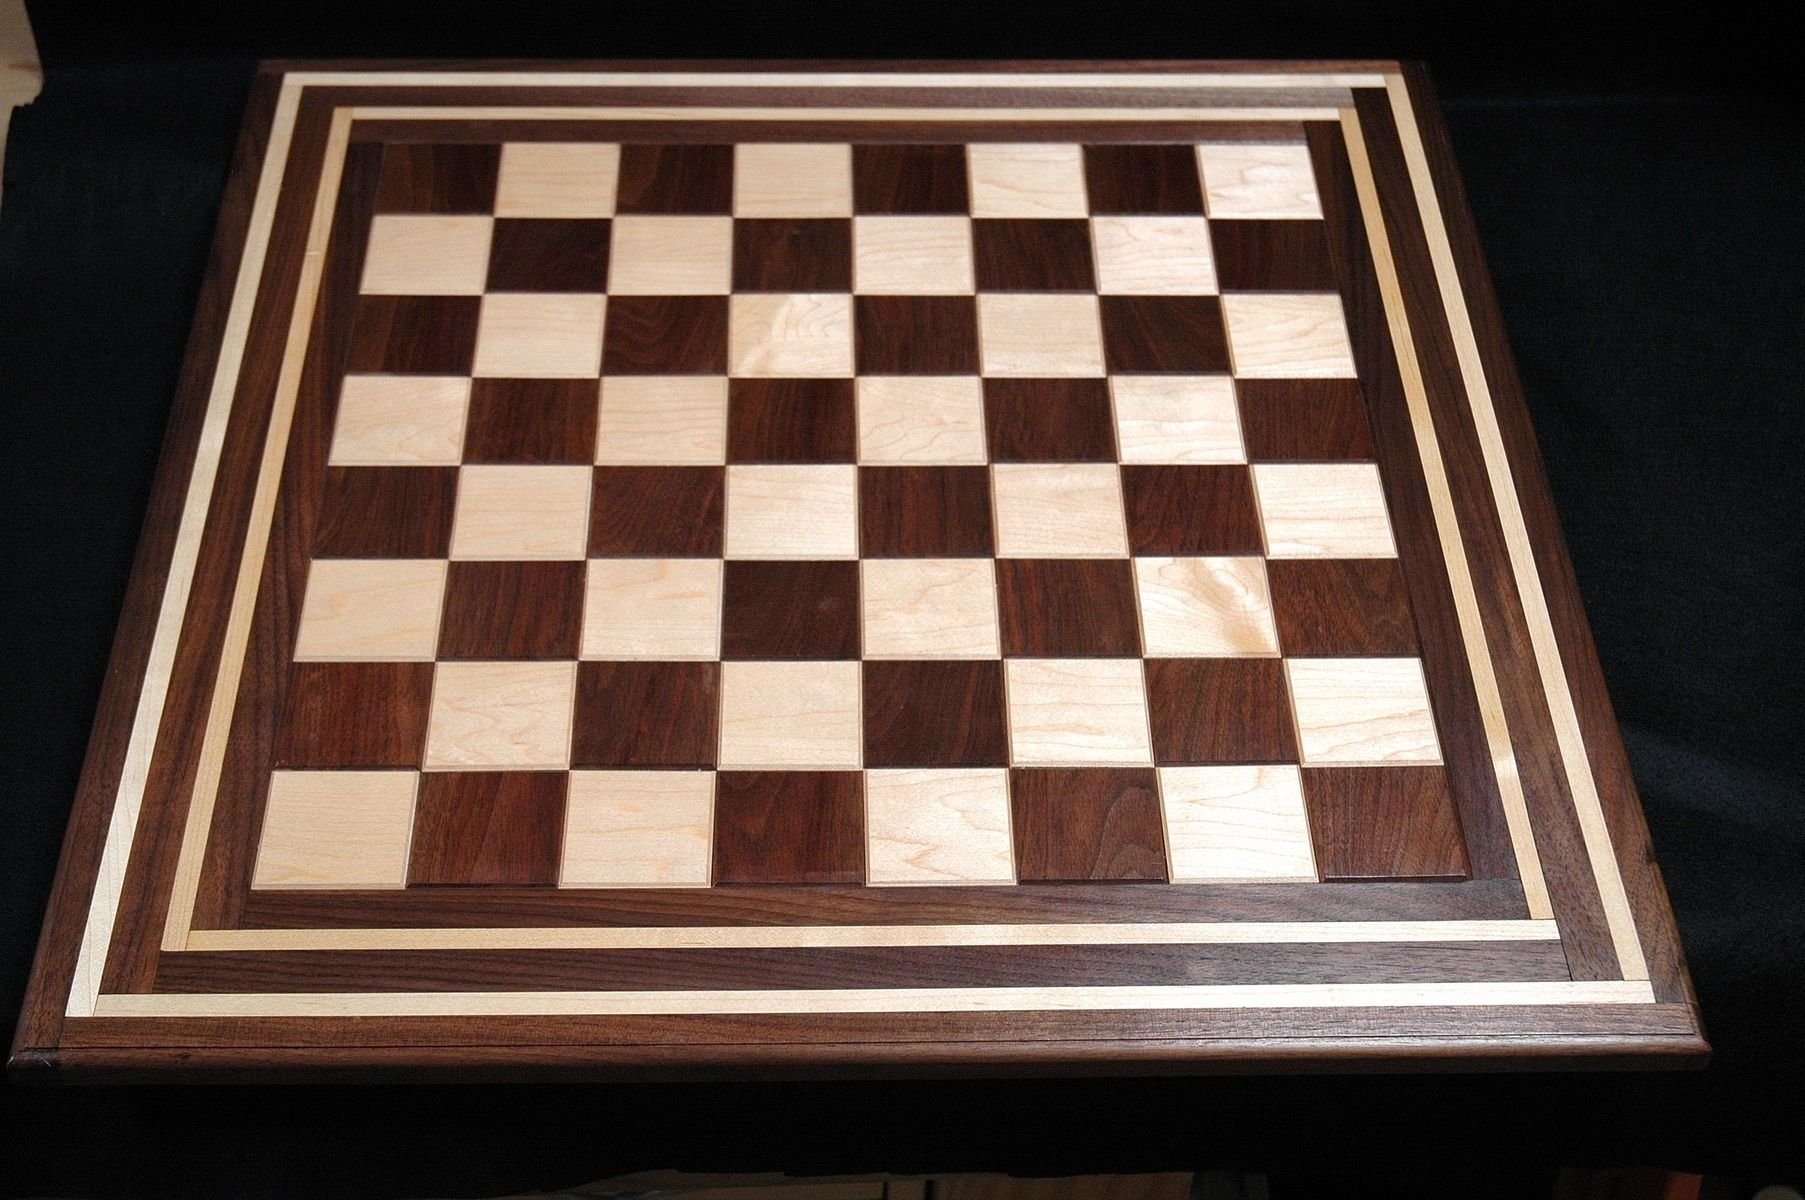 На шахматной доске 64 клетки. Ковер шахматная доска. Деревянная мозайка шазматная доска. Шахматная доска 2д. Мозаика шахматная доска.